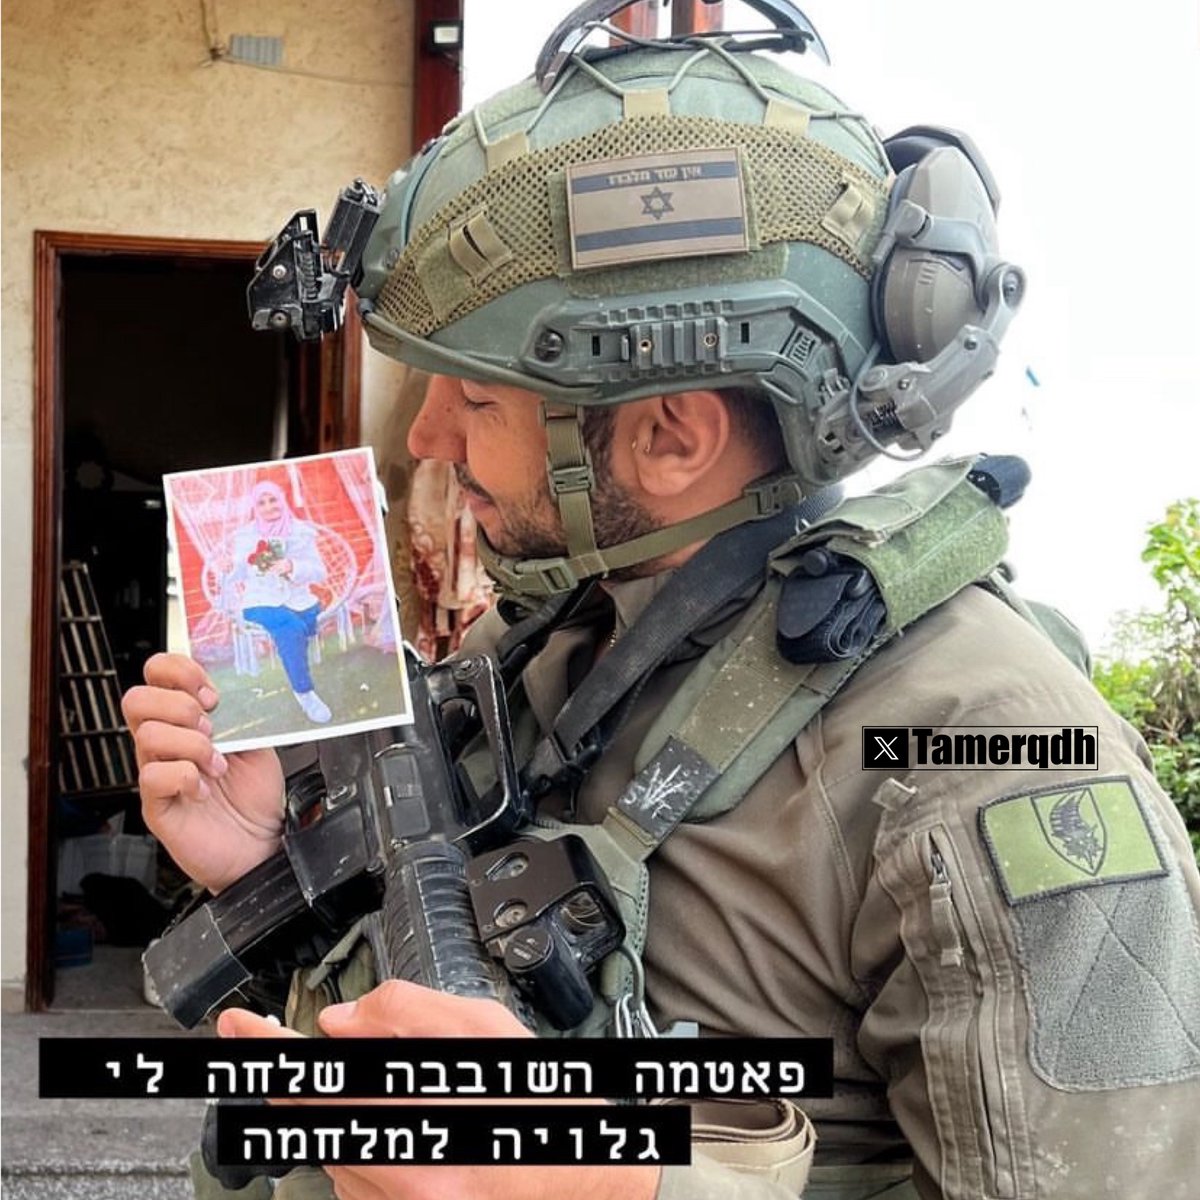 الجندي ذاته الذي نشر الفيديو في الاسفل، نشر أيضاً صورته وهو يحمل صورة فتاة من غزة ، حصل على تلك الصورة من أحد المنازل ، قد يكون قتل تلك الفتاة في الصورة .